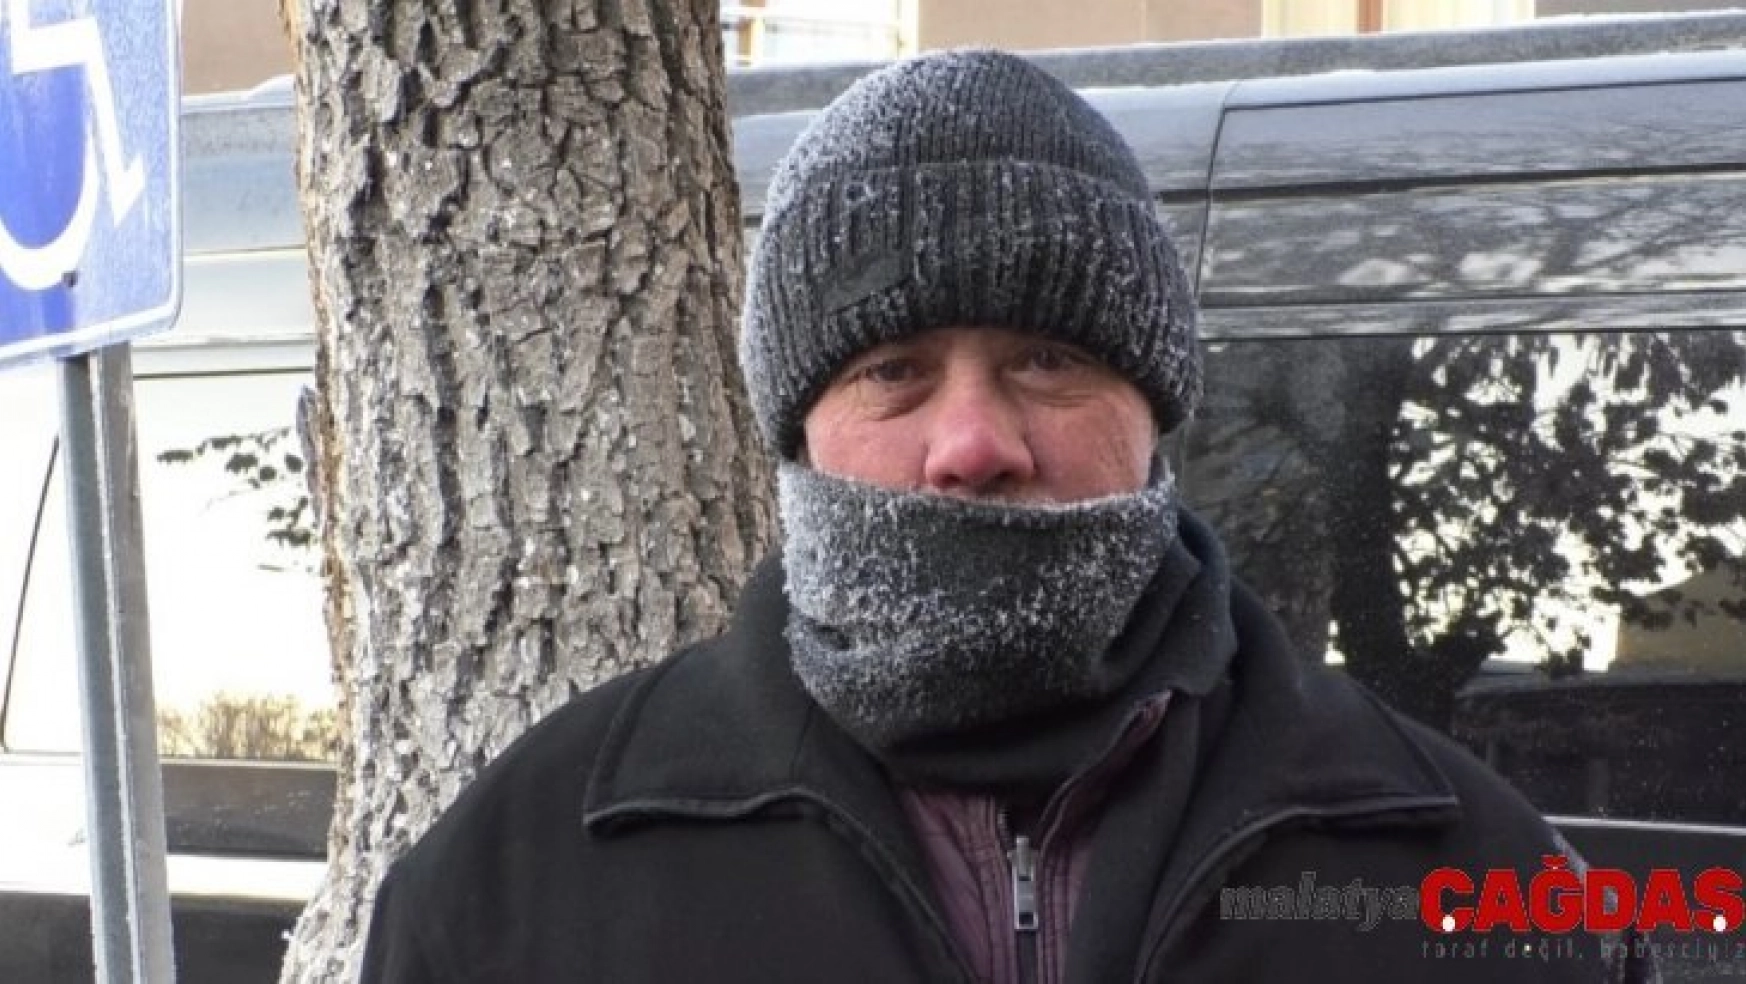 Kars'ta soğuktan vatandaşların saçları ve kirpikleri dondu